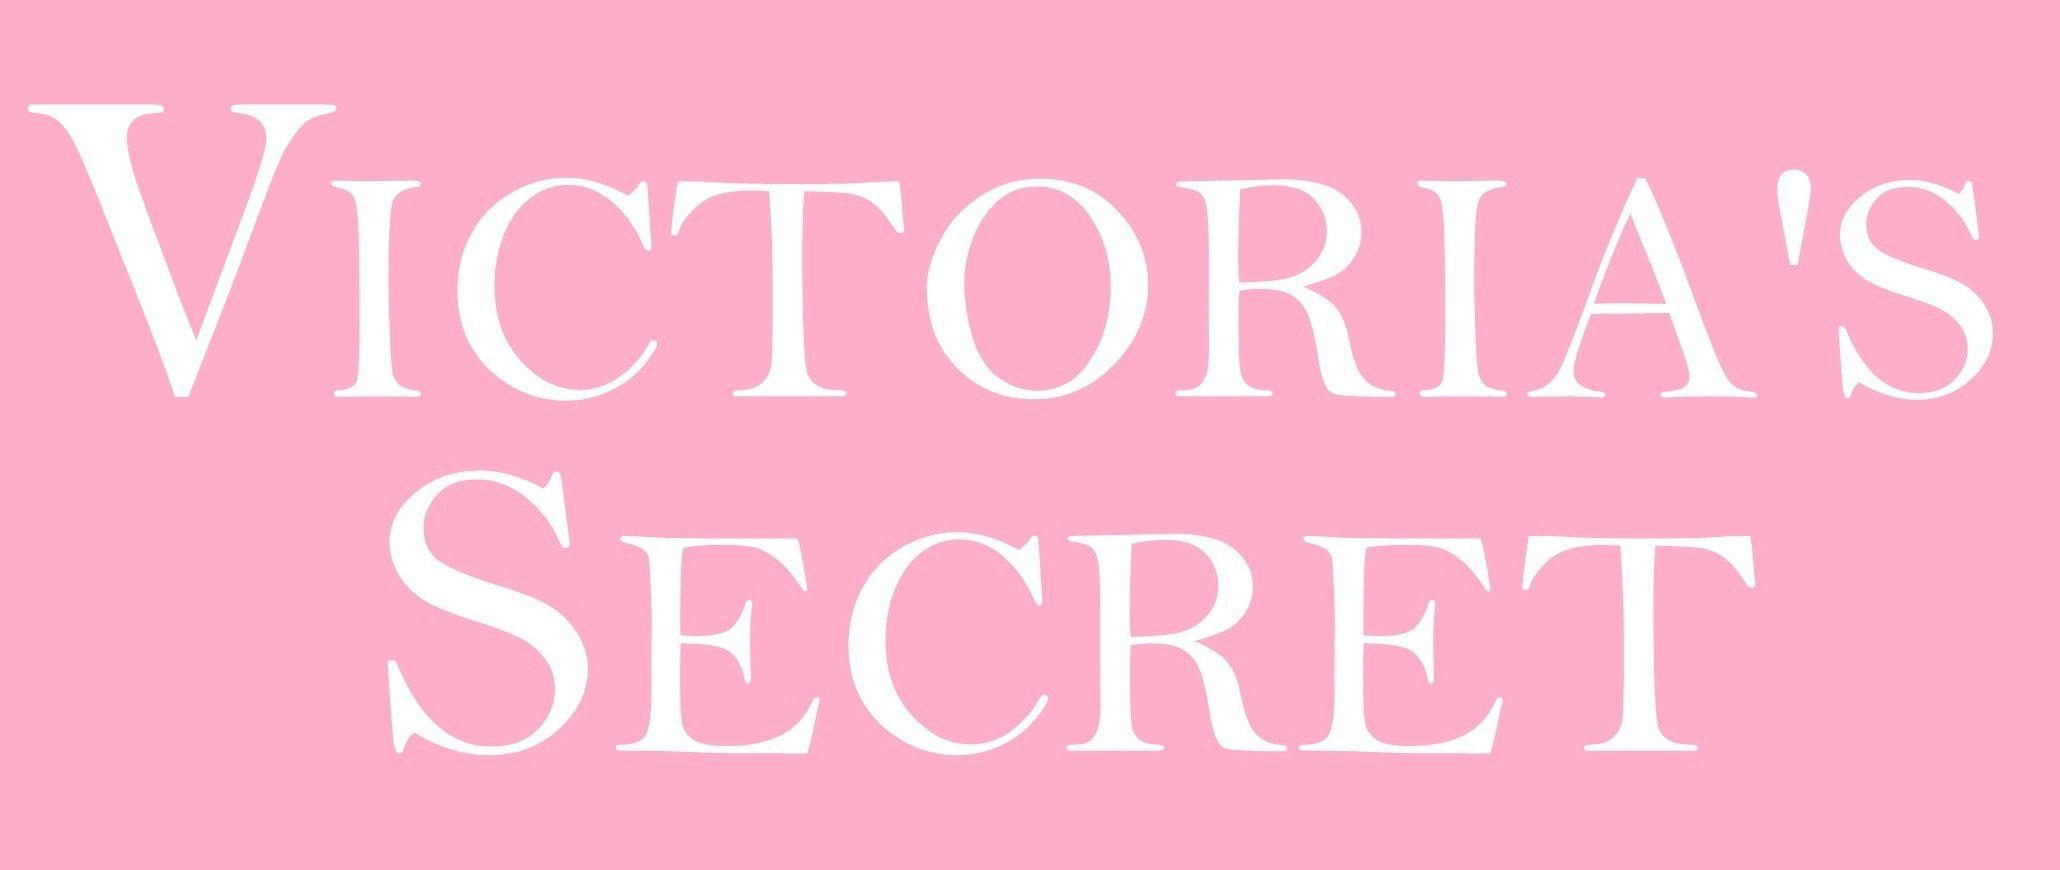 PINK Victoria's Secret Wallpapers - Wallpaper Cave